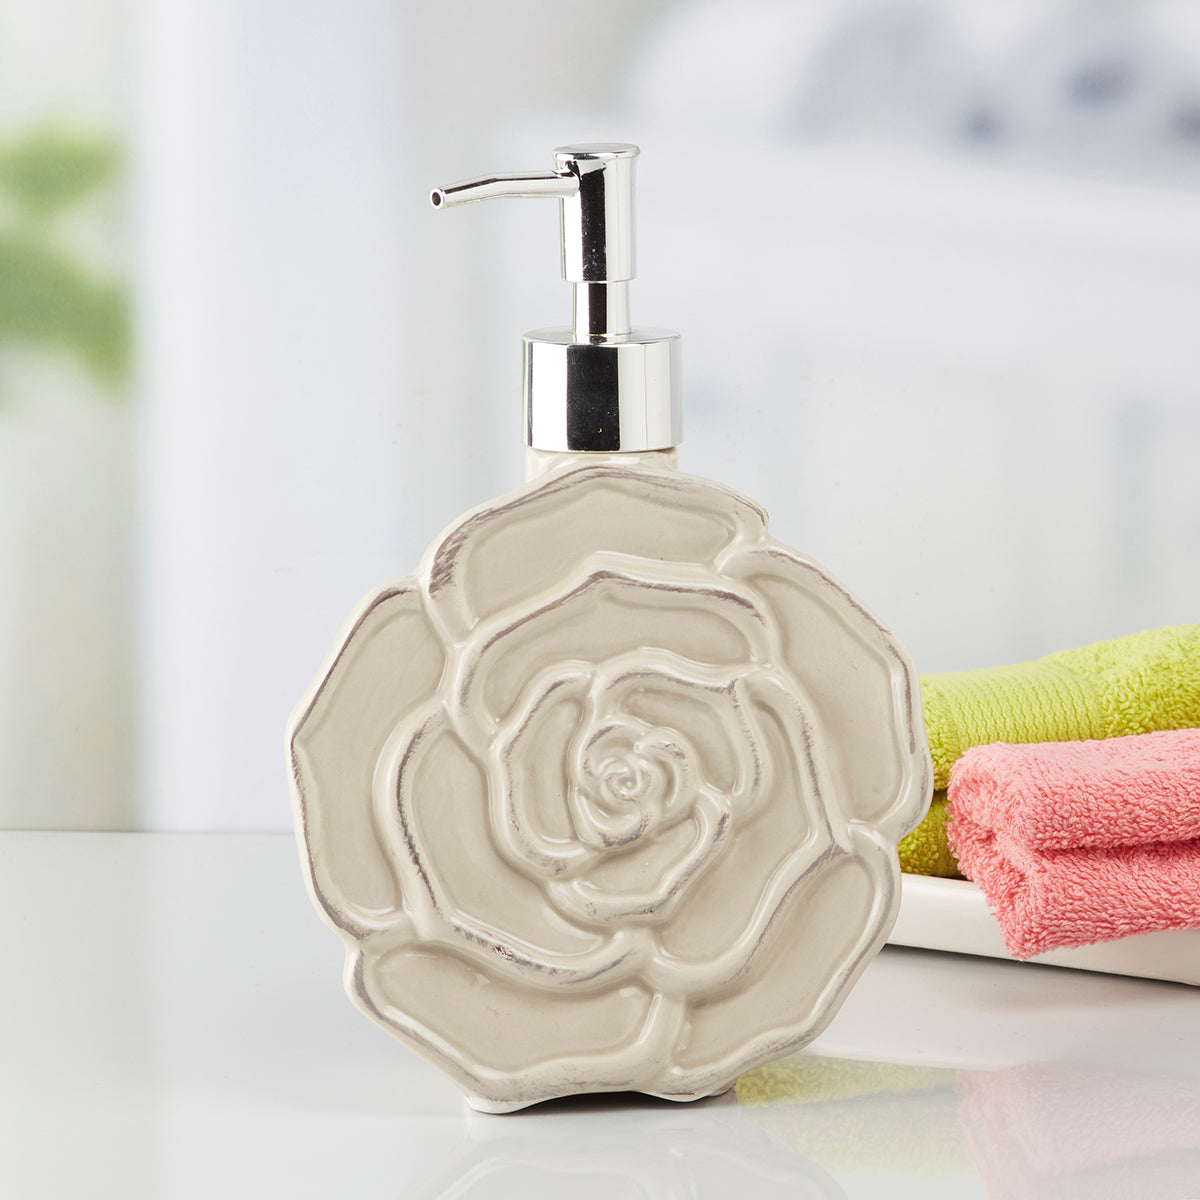 Kookee Ceramic Soap Dispenser for Bathroom handwash, refillable pump bottle for Kitchen hand wash basin, Set of 1, Beige (7961)